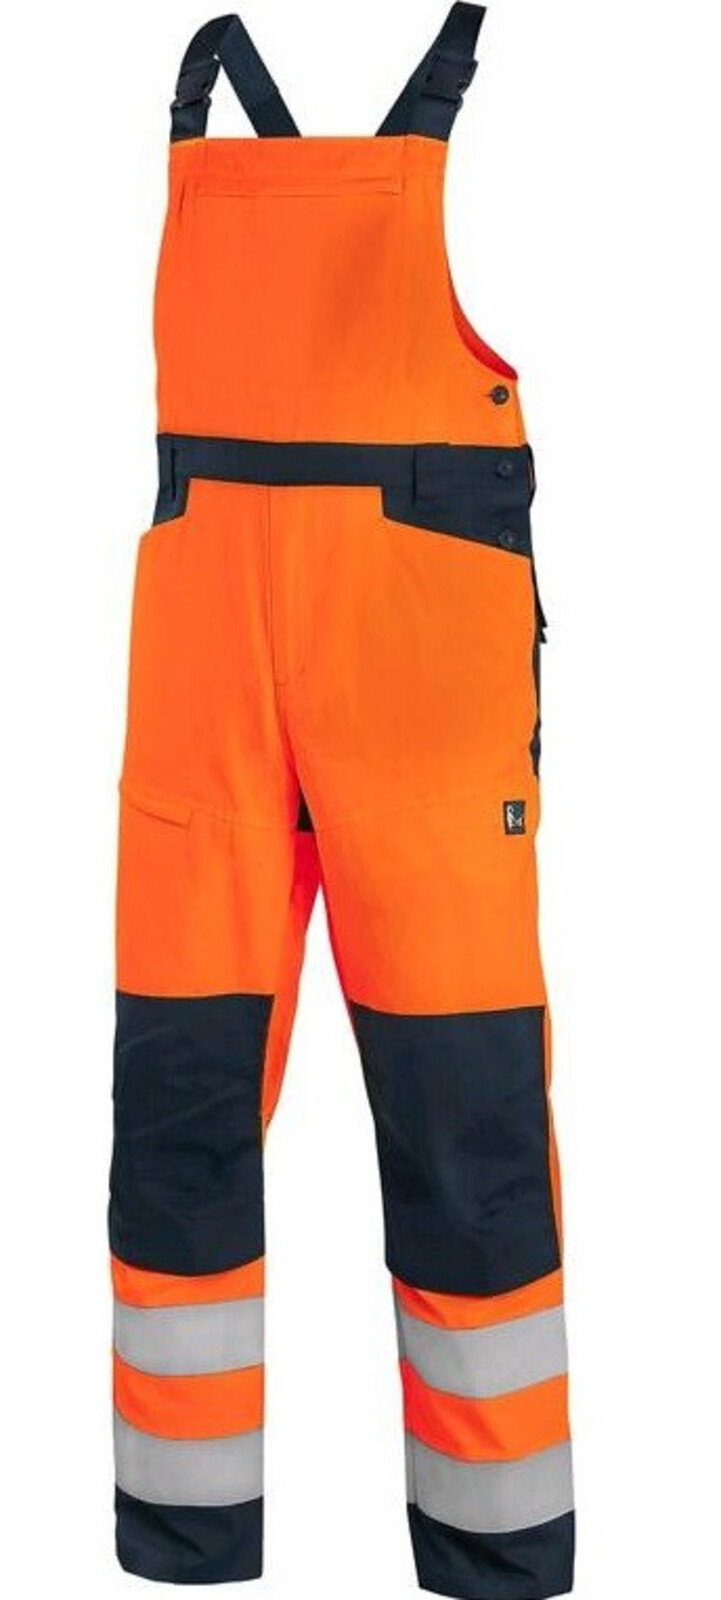 Pánske letné reflexné nohavice na traky CXS Halifax - veľkosť: 58, farba: oranžová/navy